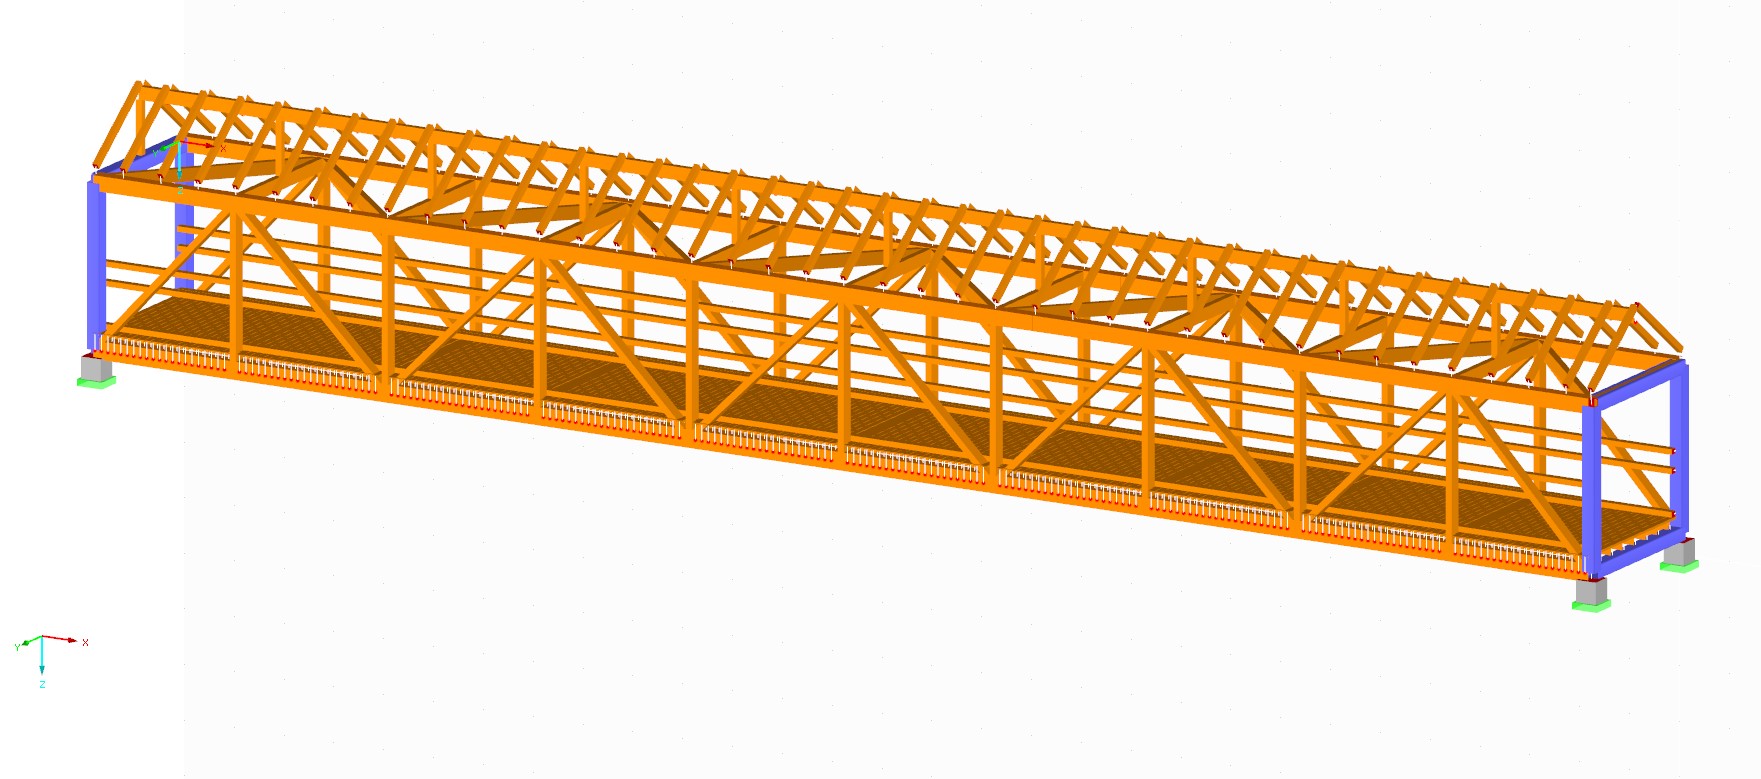 Opracowanie programu EDP do analizy uszkodzeń drewnianych mostów na podstawie pomiarów drgań